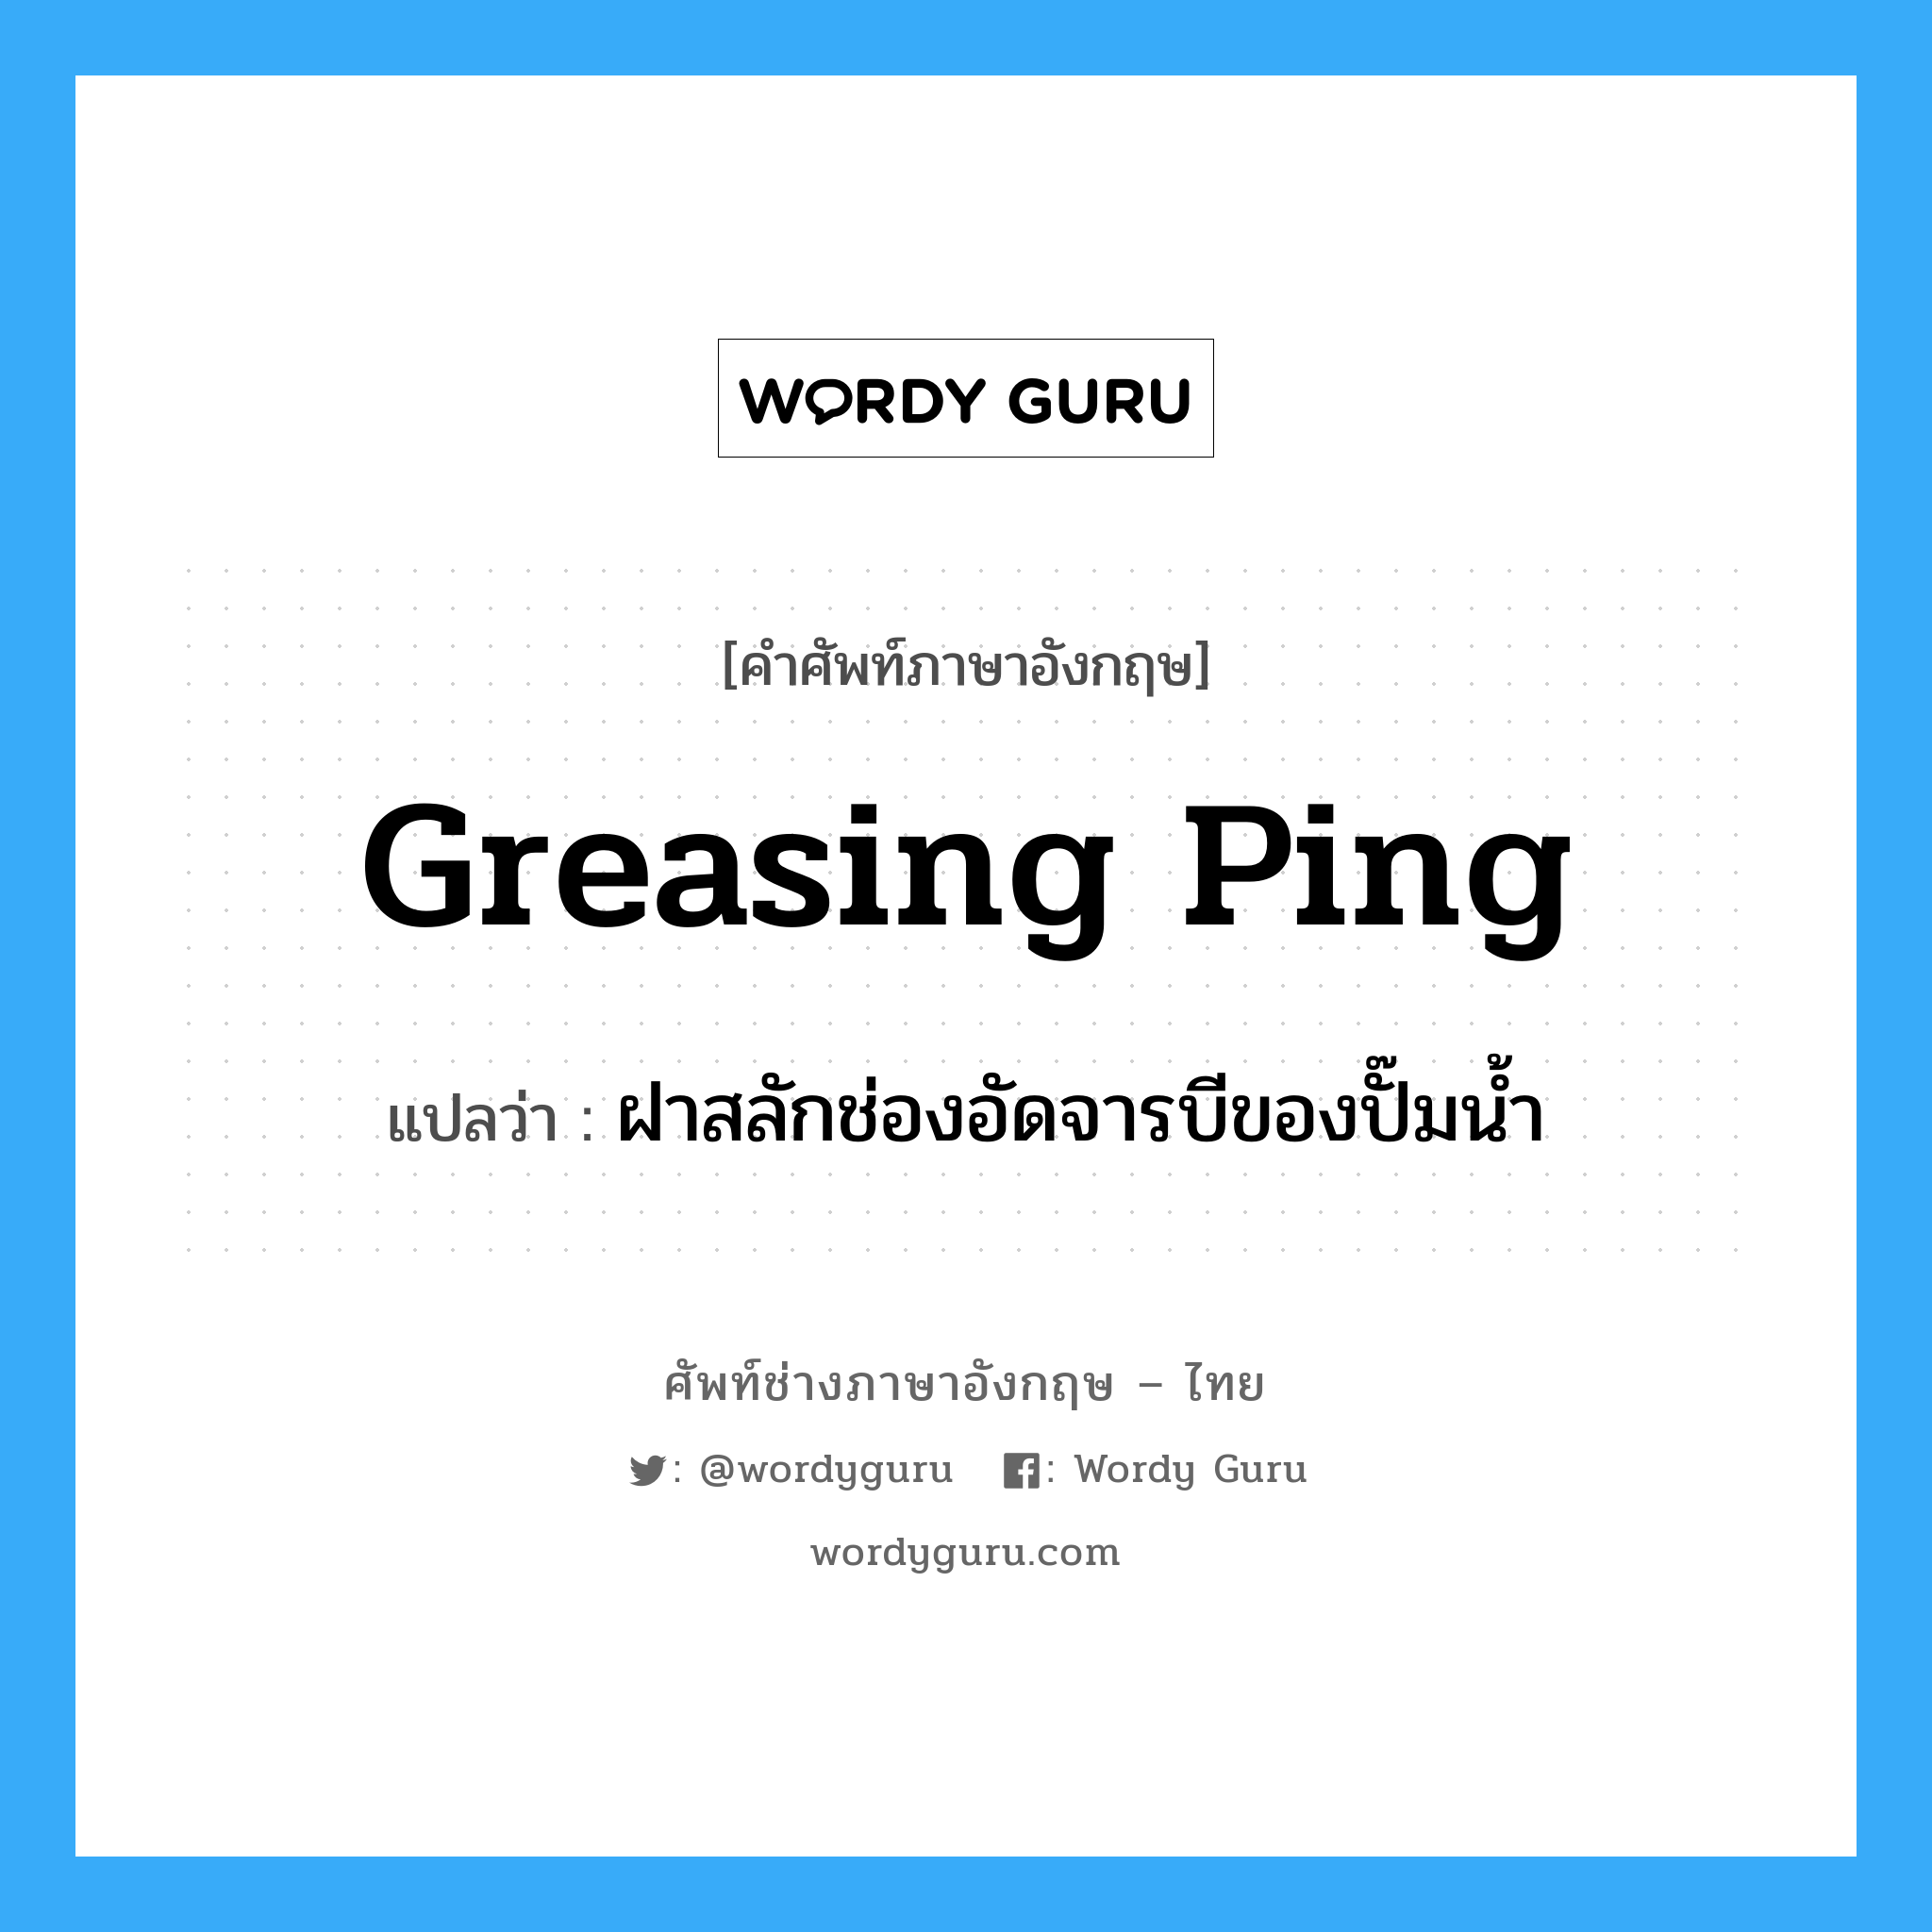 greasing ping แปลว่า?, คำศัพท์ช่างภาษาอังกฤษ - ไทย greasing ping คำศัพท์ภาษาอังกฤษ greasing ping แปลว่า ฝาสลักช่องอัดจารบีของปั๊มน้ำ